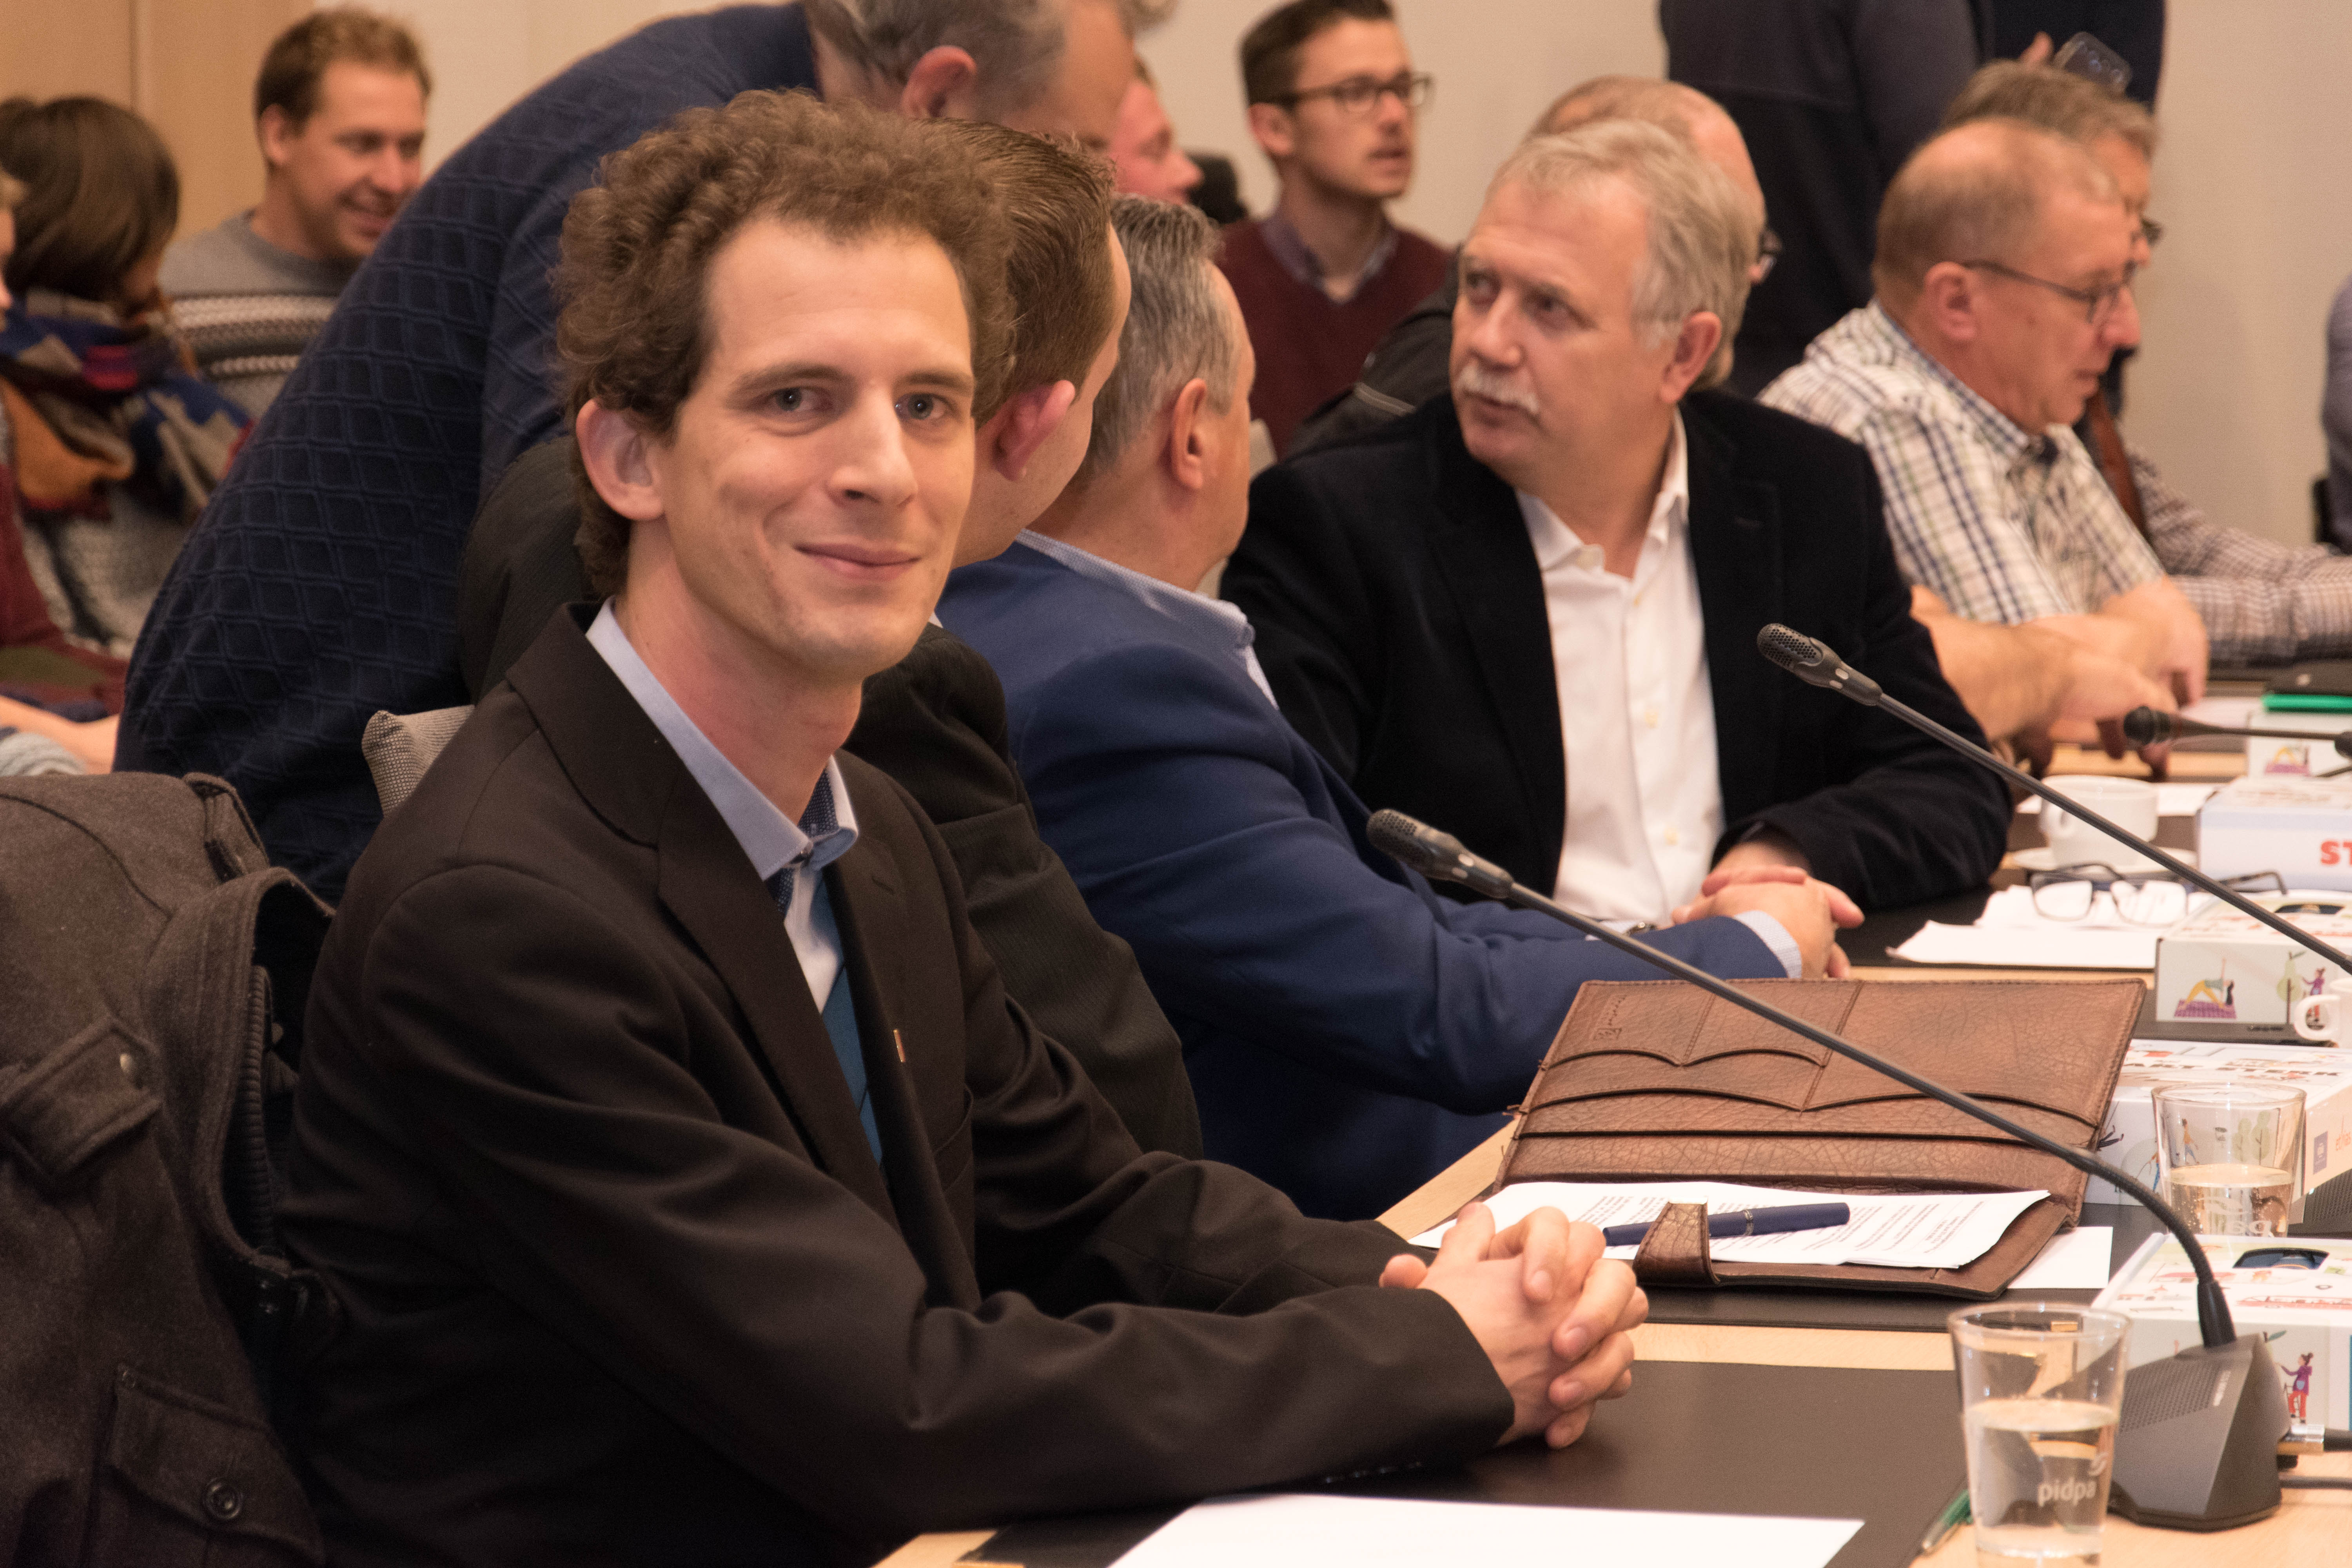 Wout legt eed af als eerste PVDA-raadslid uit Turnhoutse geschiedenis